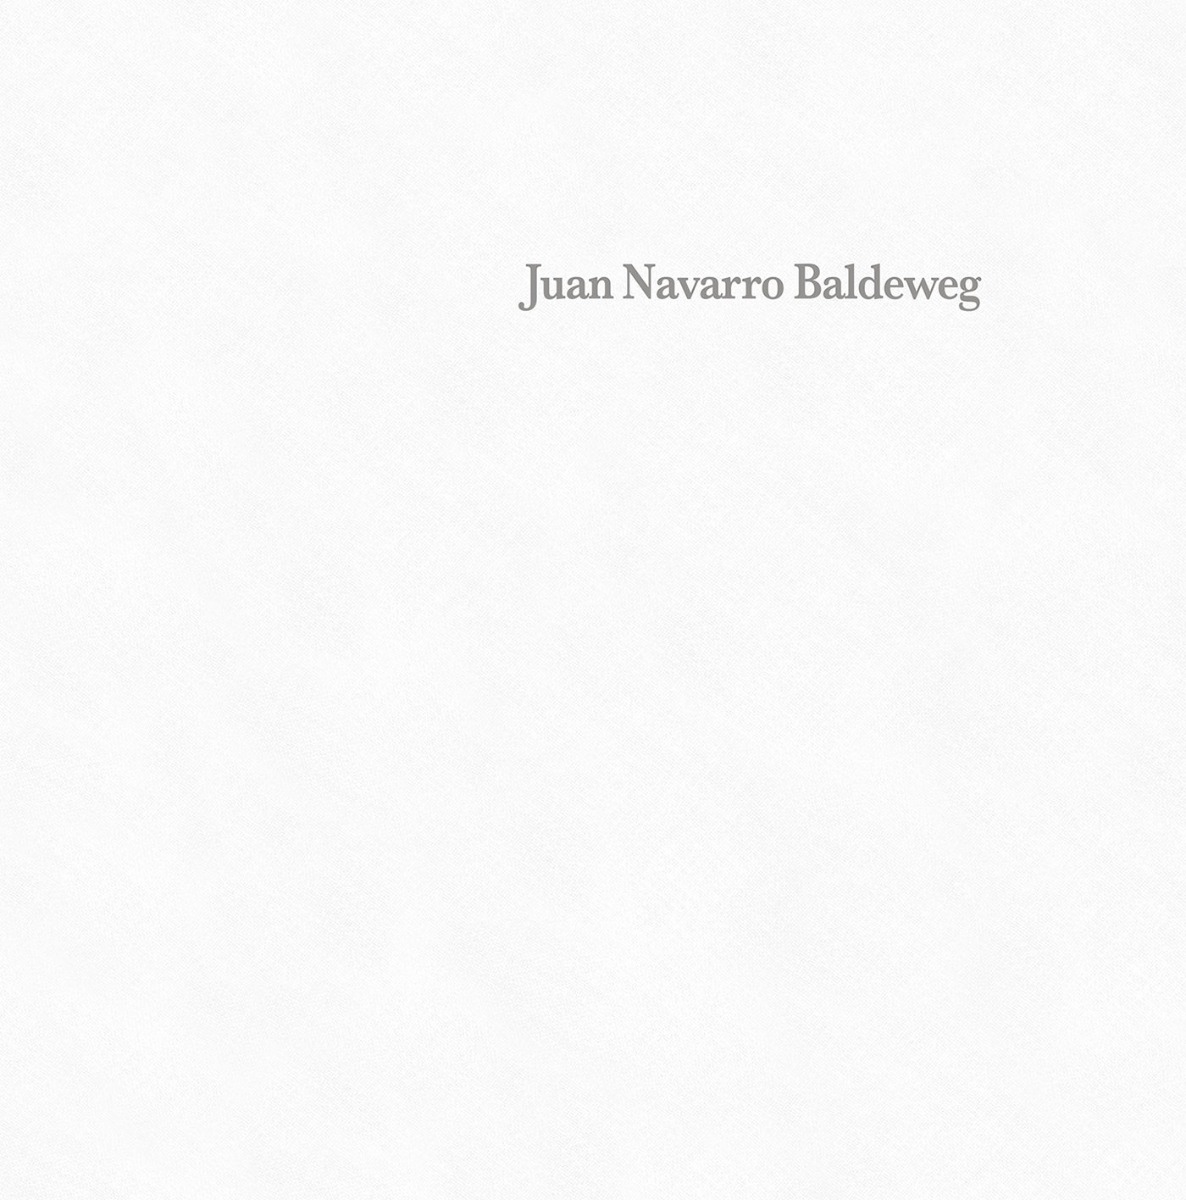 Juan Navarro Baldeweb -0